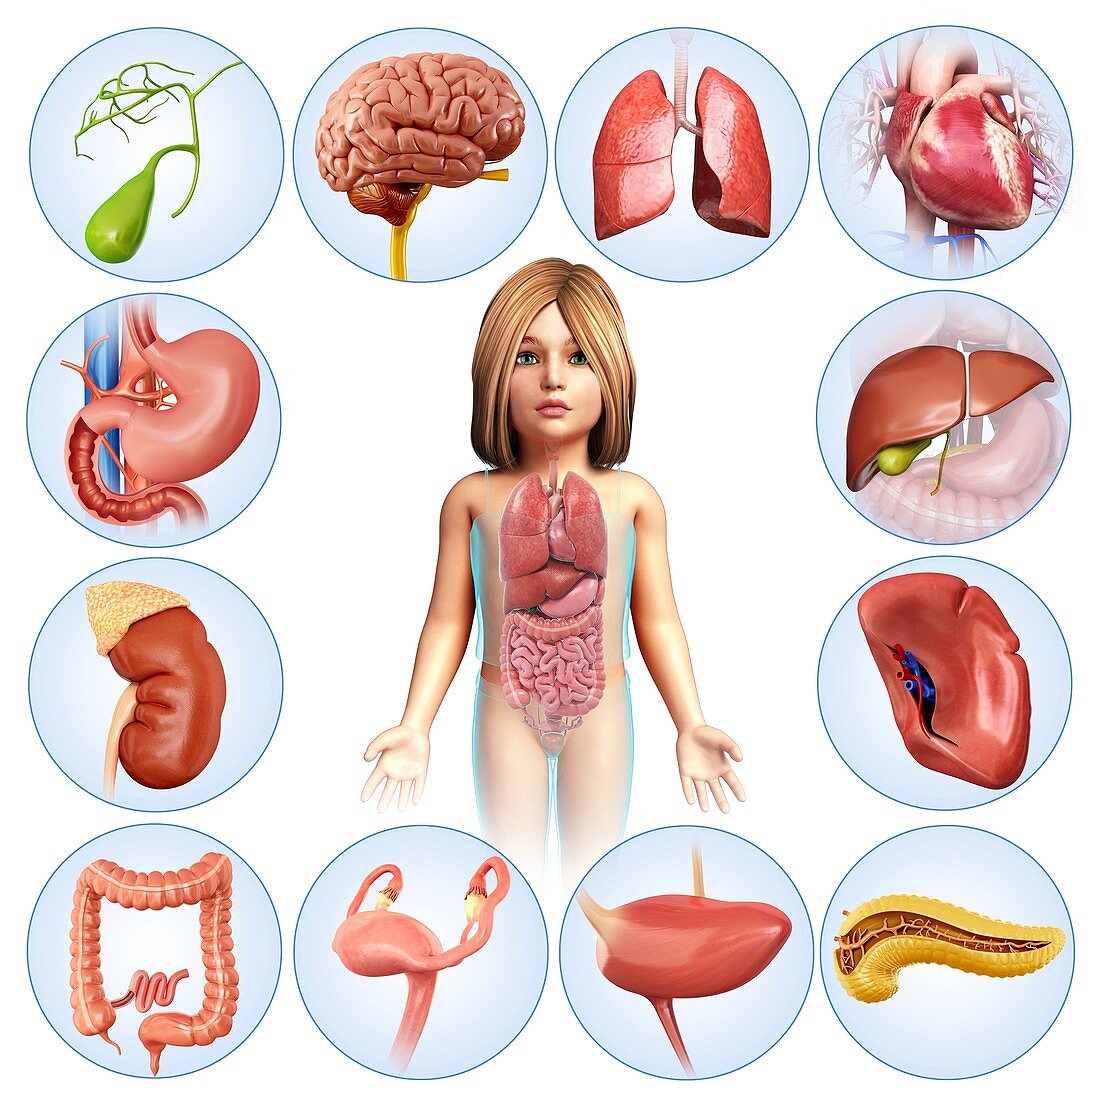 Child's internal organs, illustration